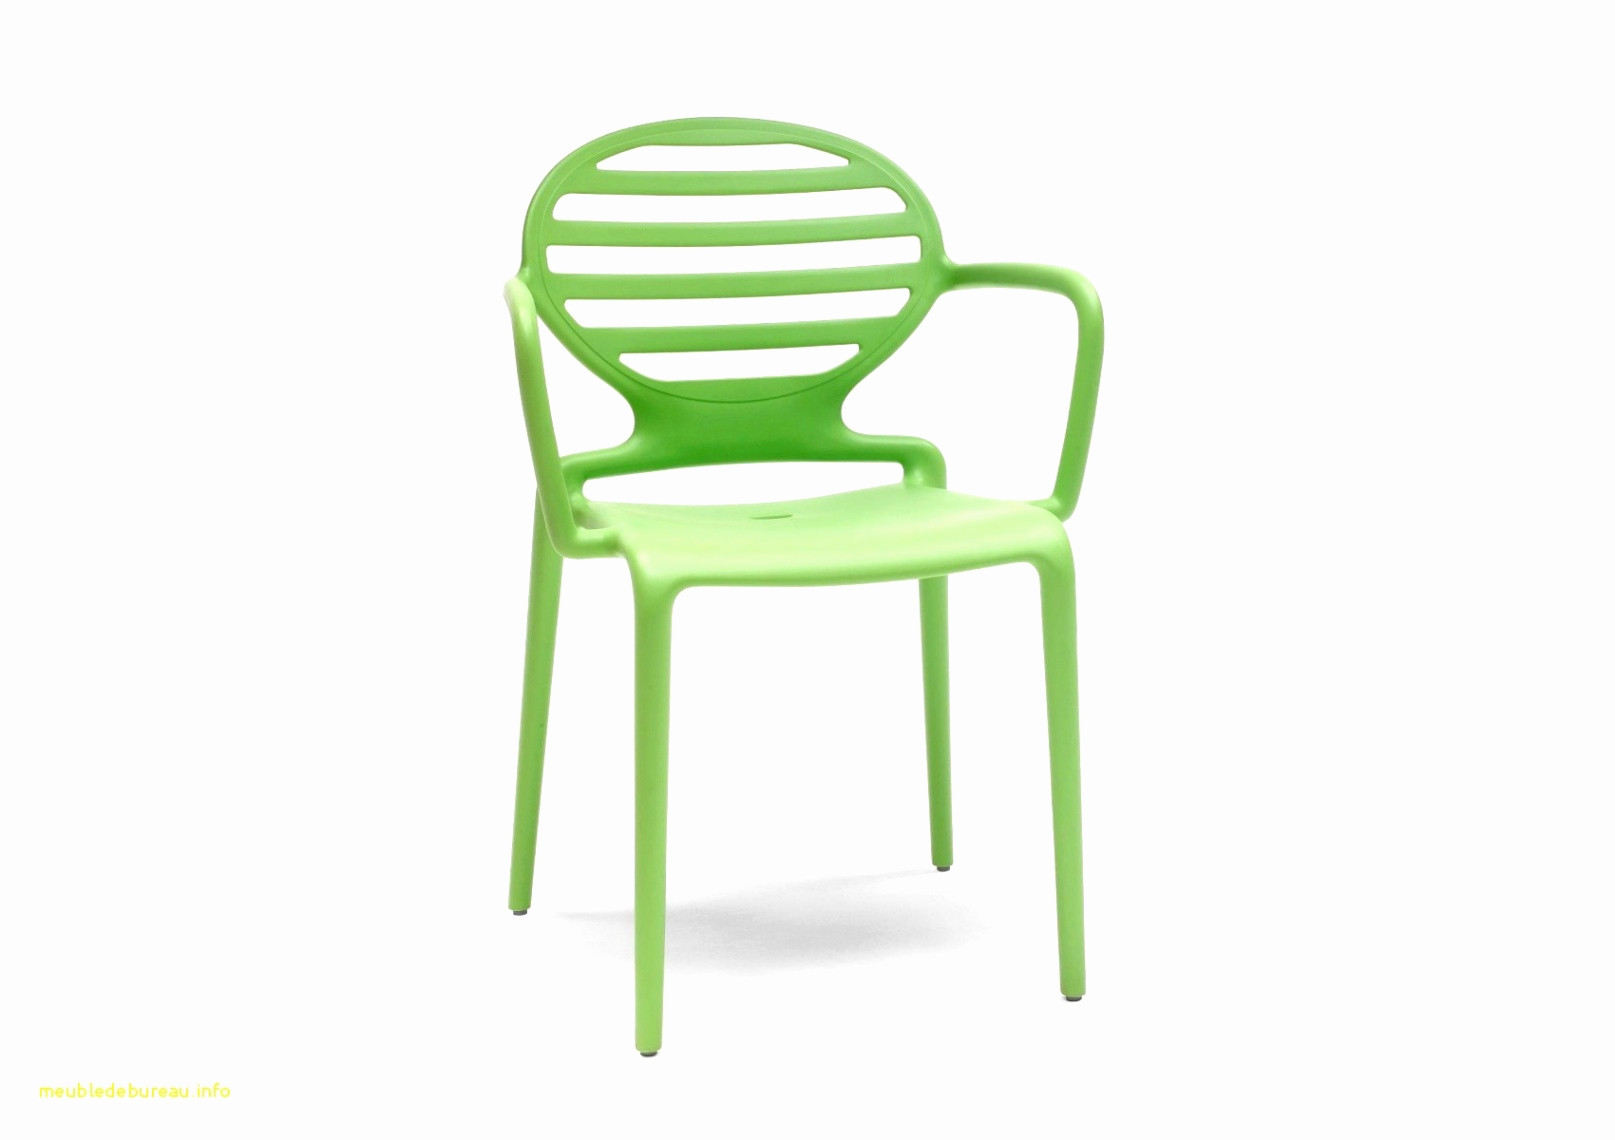 fauteuil jardin i de cher design pas beau cuir chaise chaise chaise salon of fauteuil jardin i